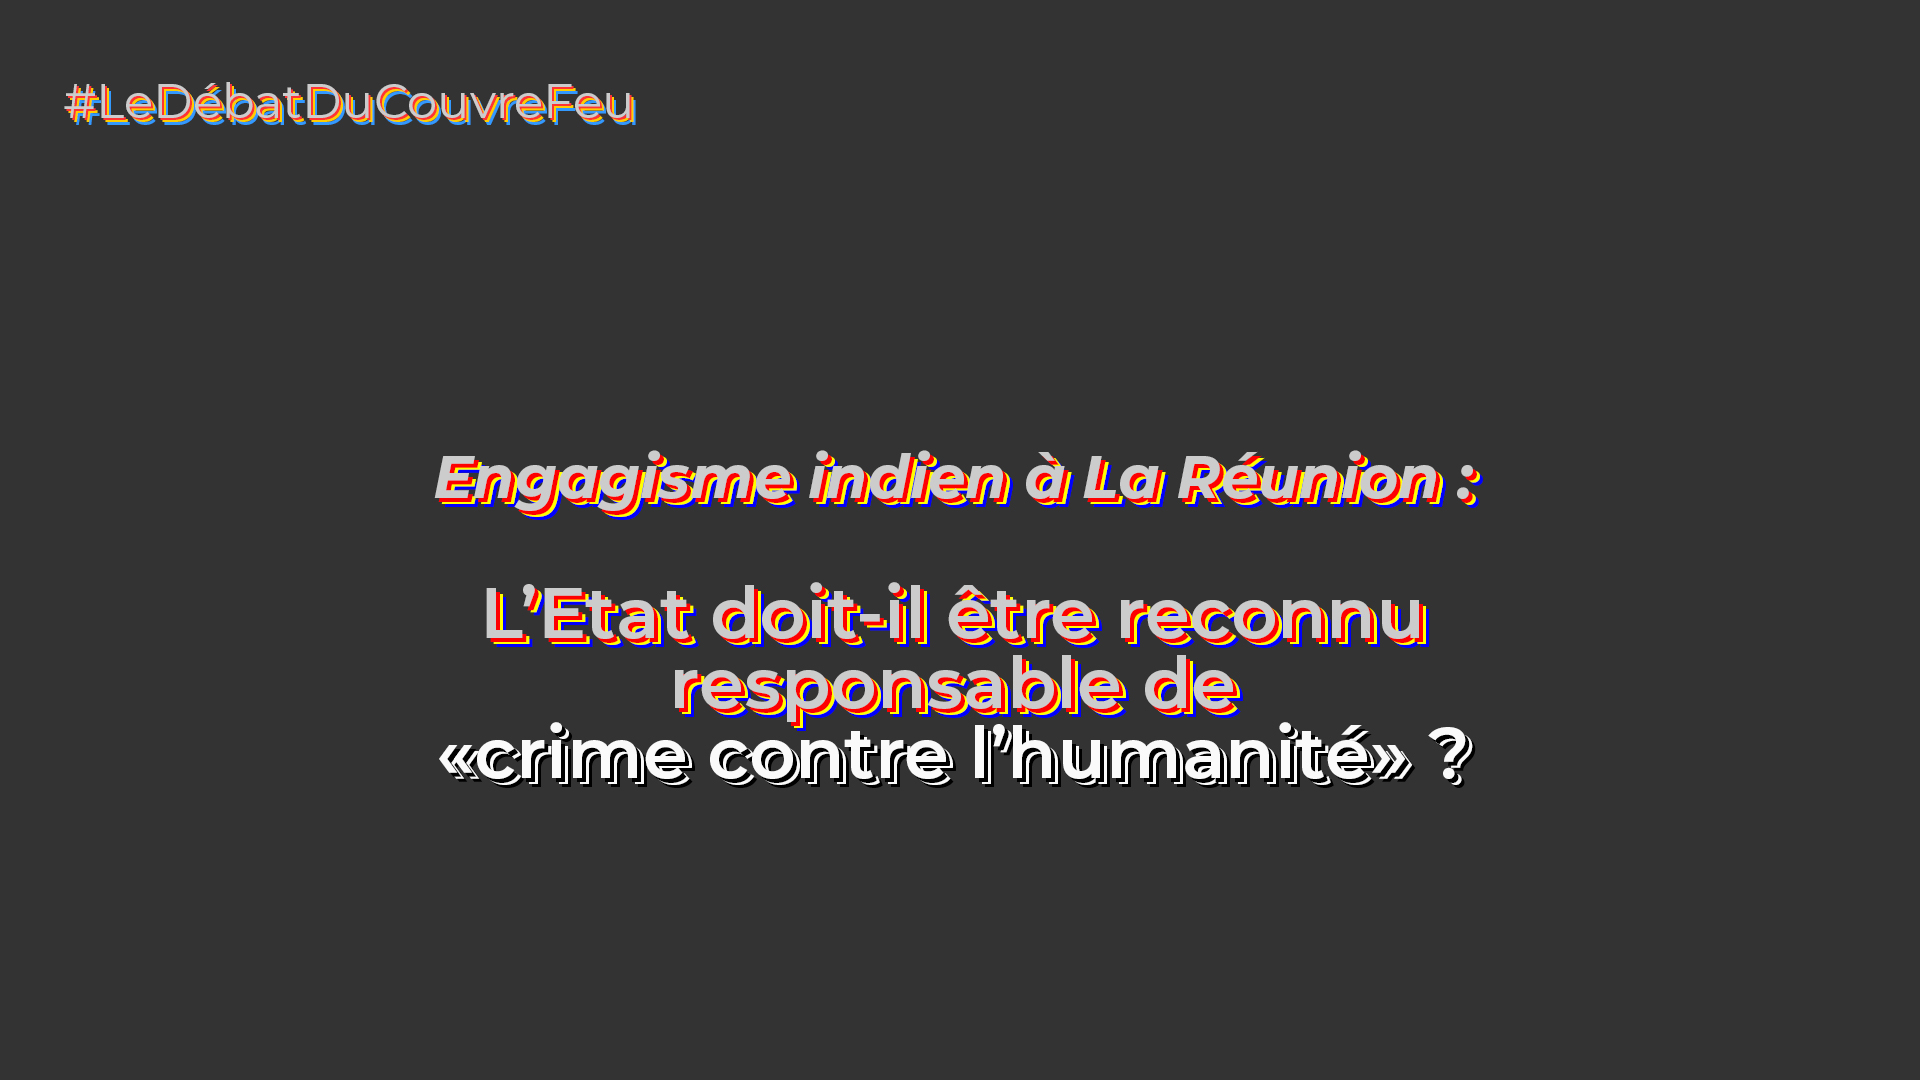 Engagisme indien à La Réunion : L'Etat doit-il être reconnu responsable de "crime contre l'humanité" ?